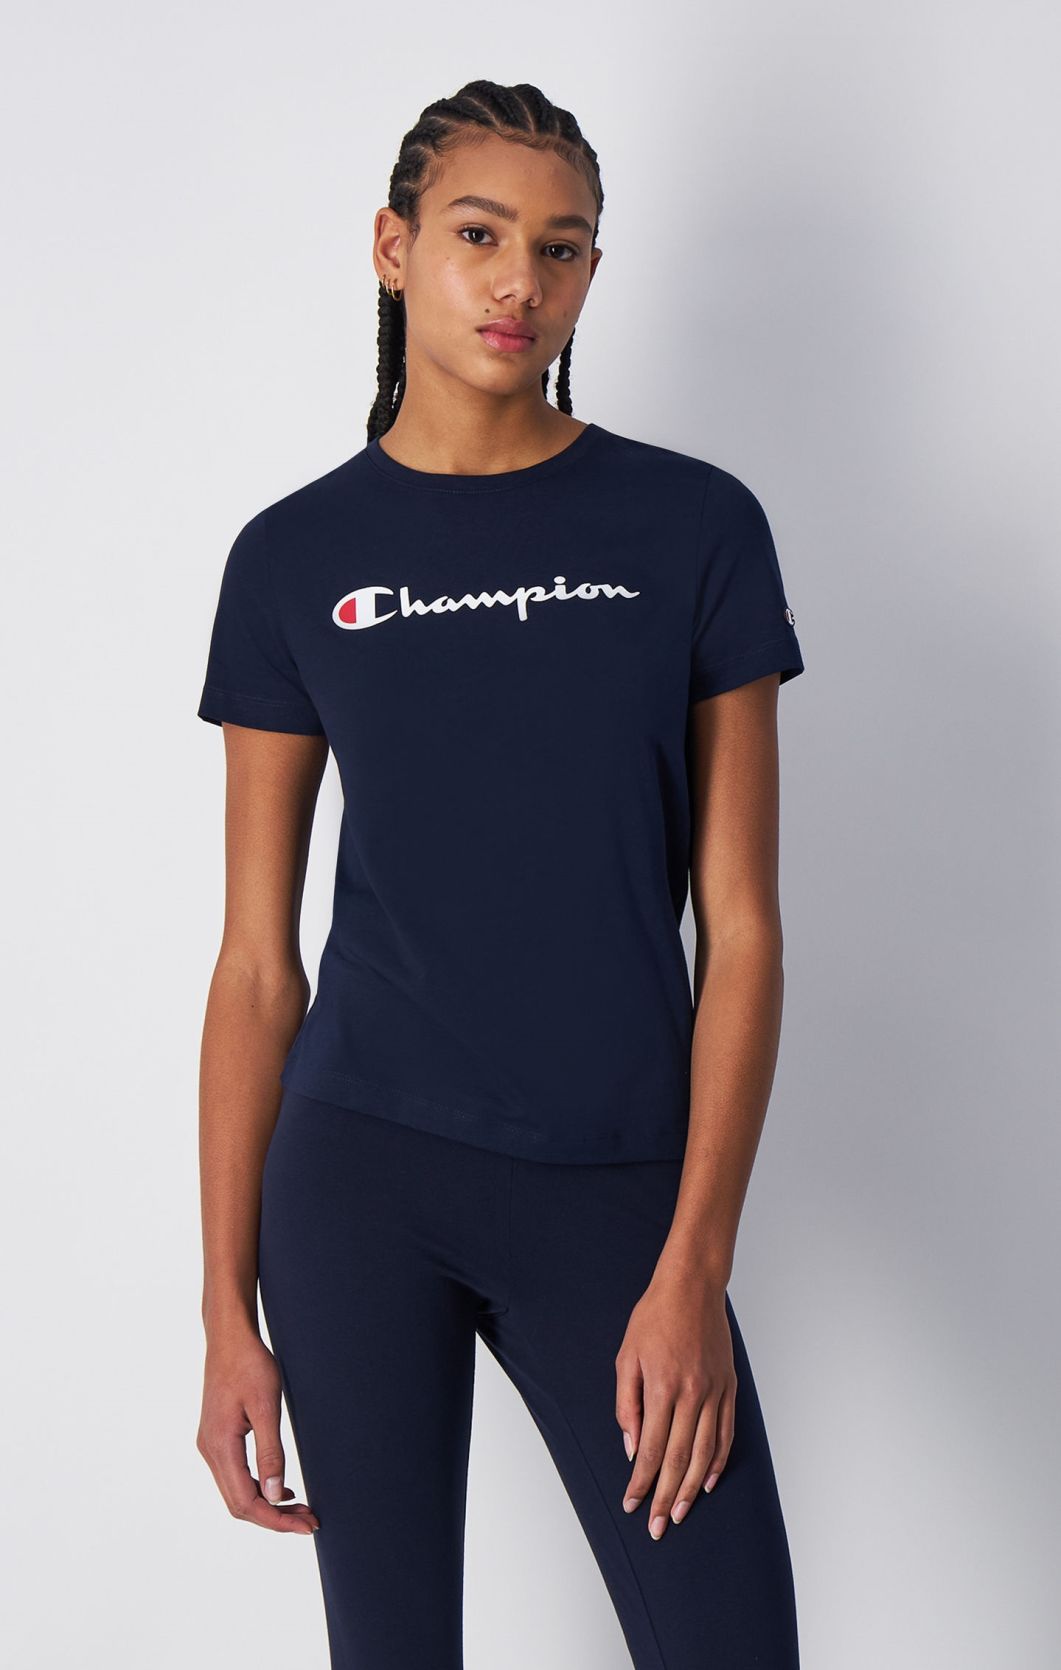 Rundhals-T-Shirt mit großem Champion-Logo | Champion Deutschland